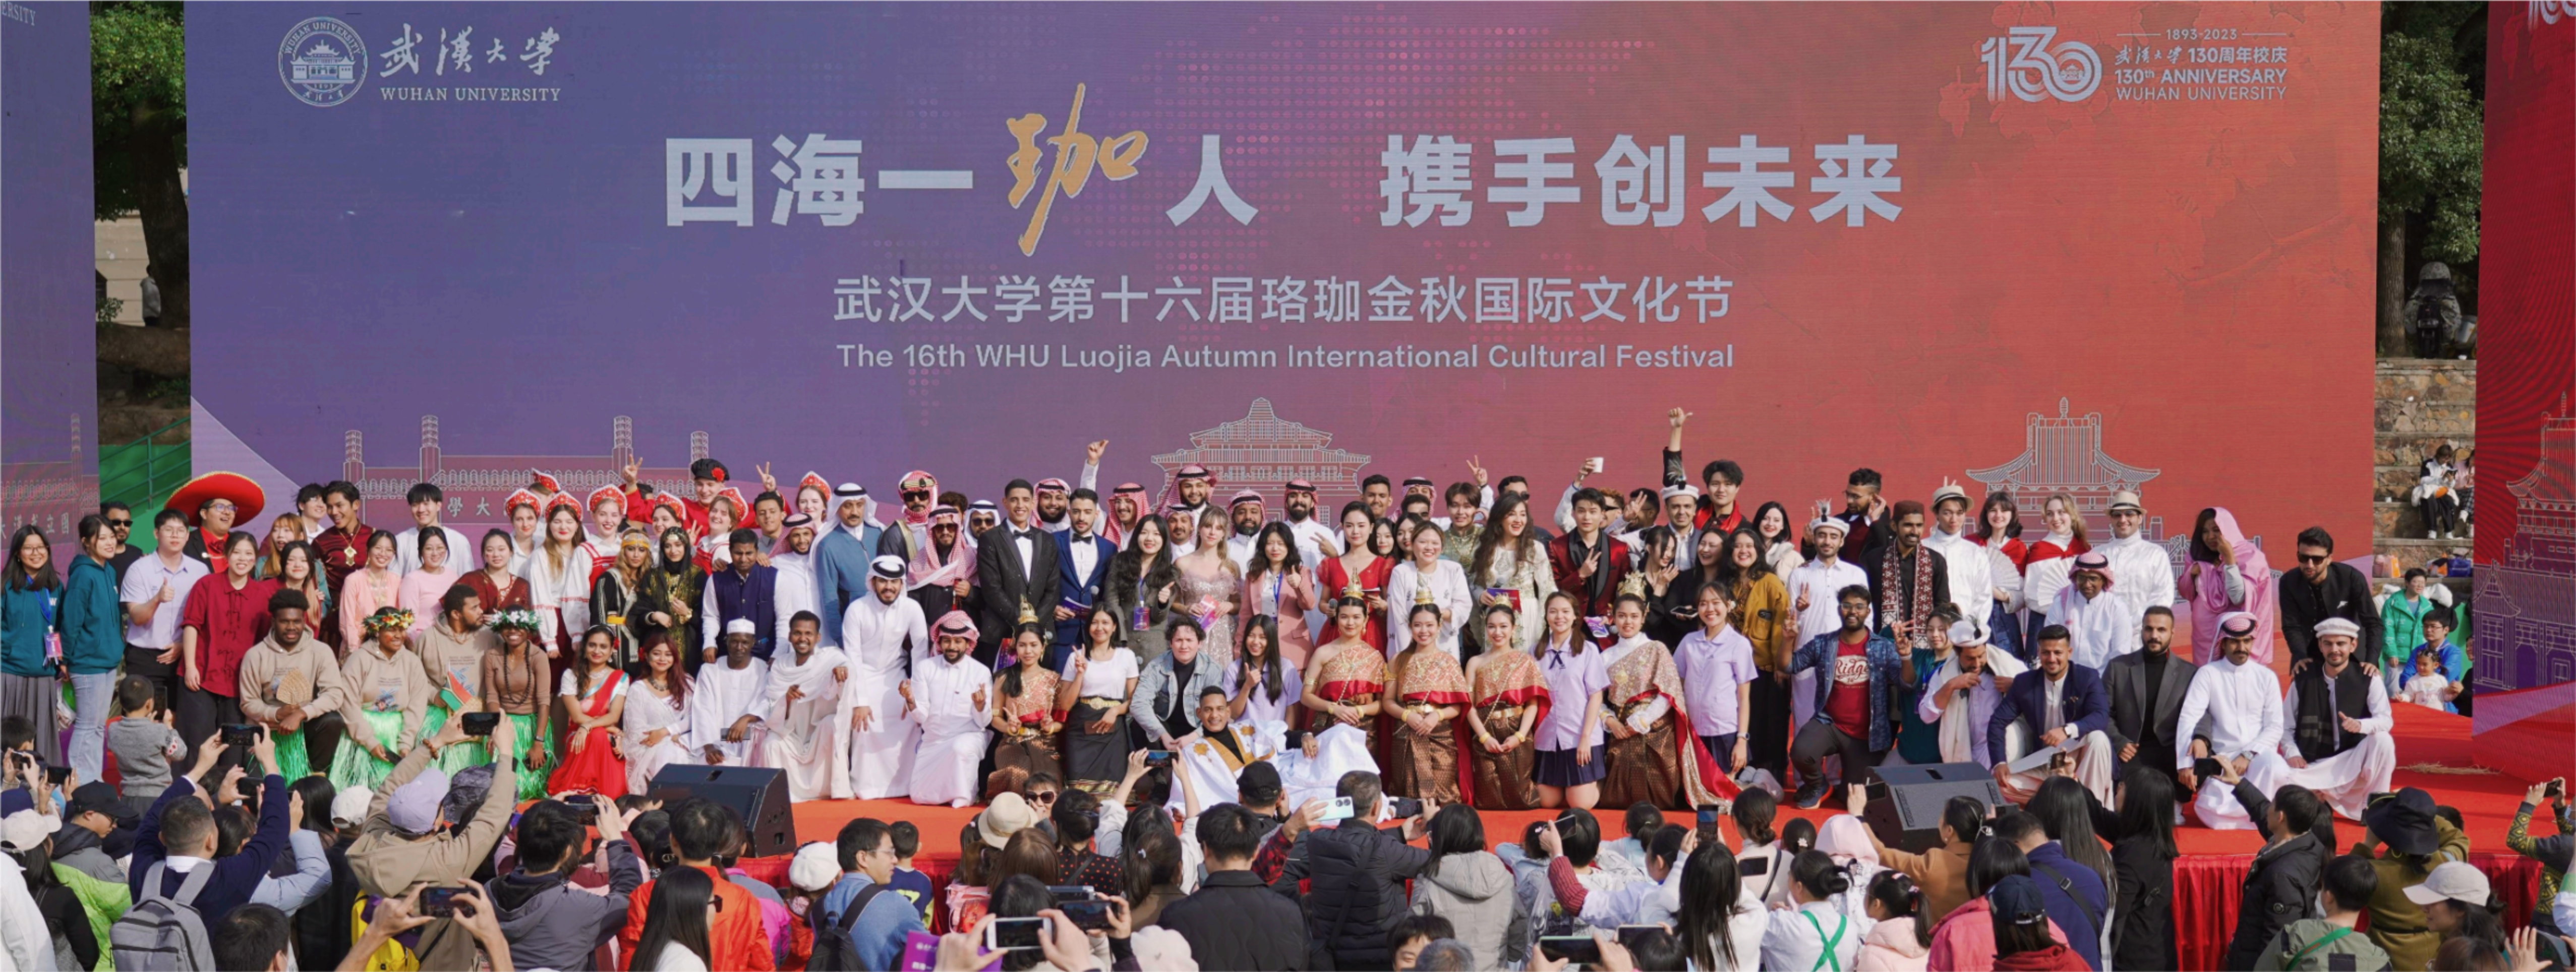 武汉大学第十六届珞珈金秋国际文化节